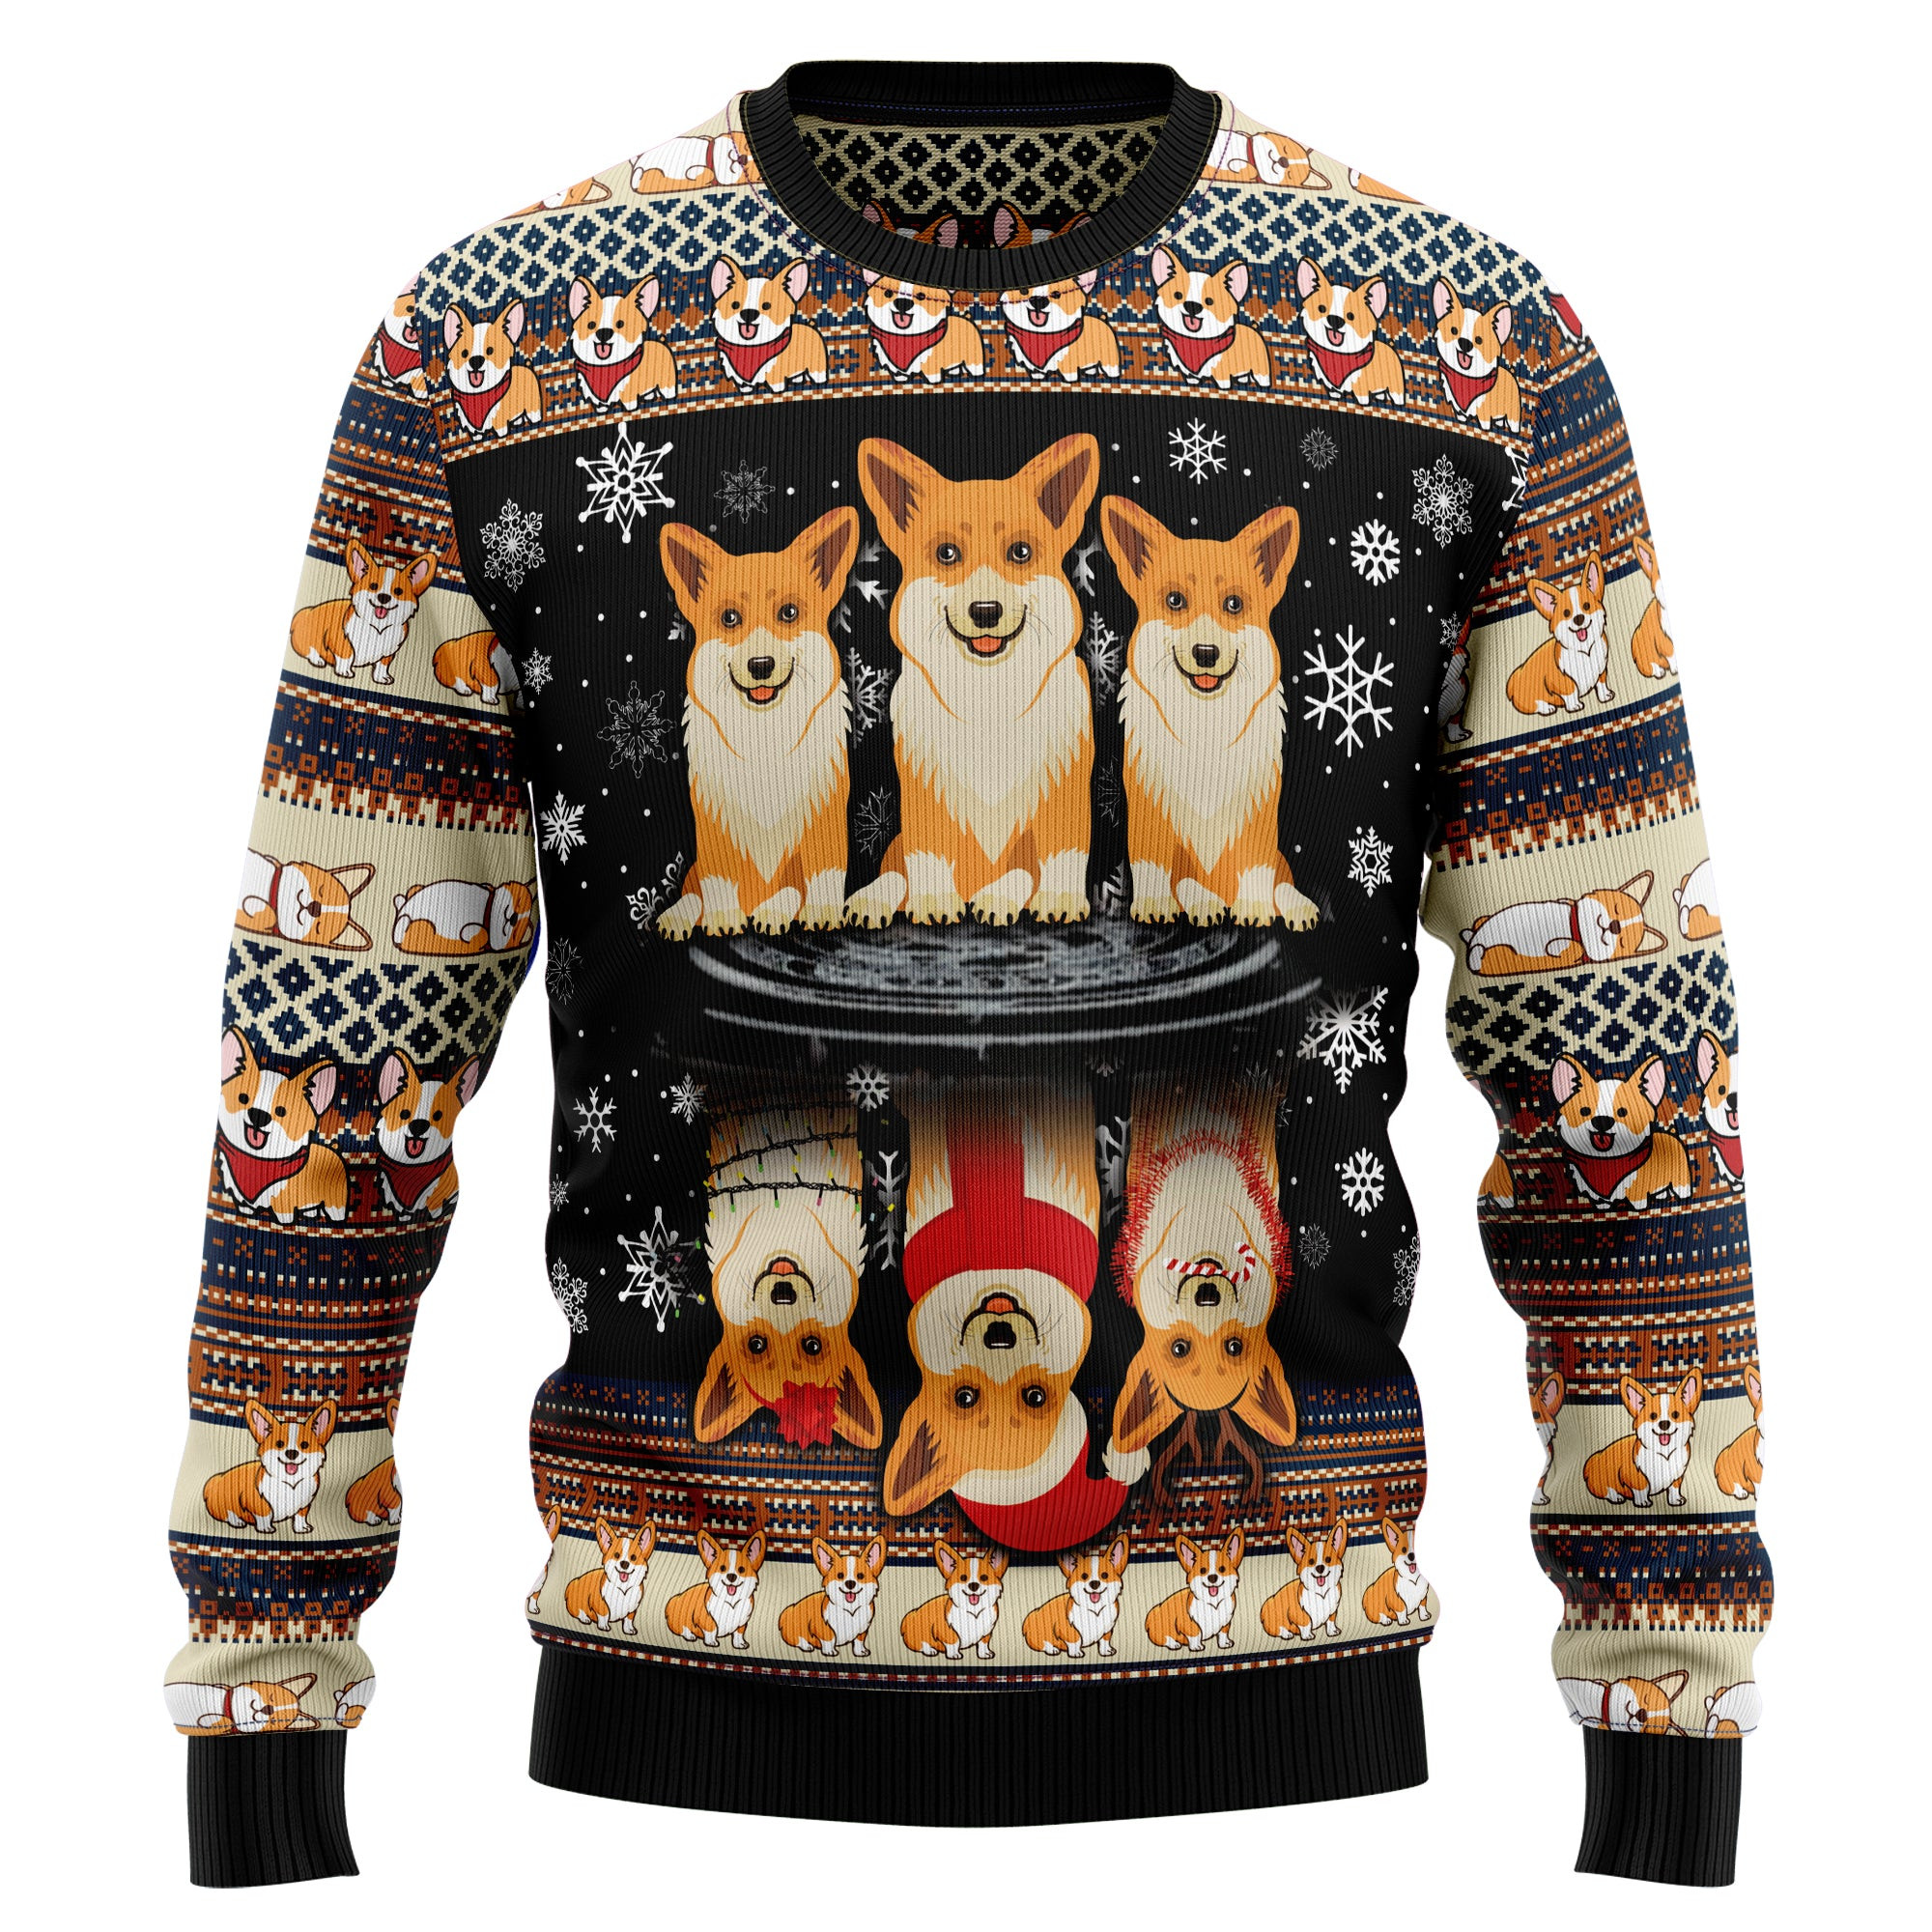 Pembroke Welsh Corgi Ugly Christmas Sweater